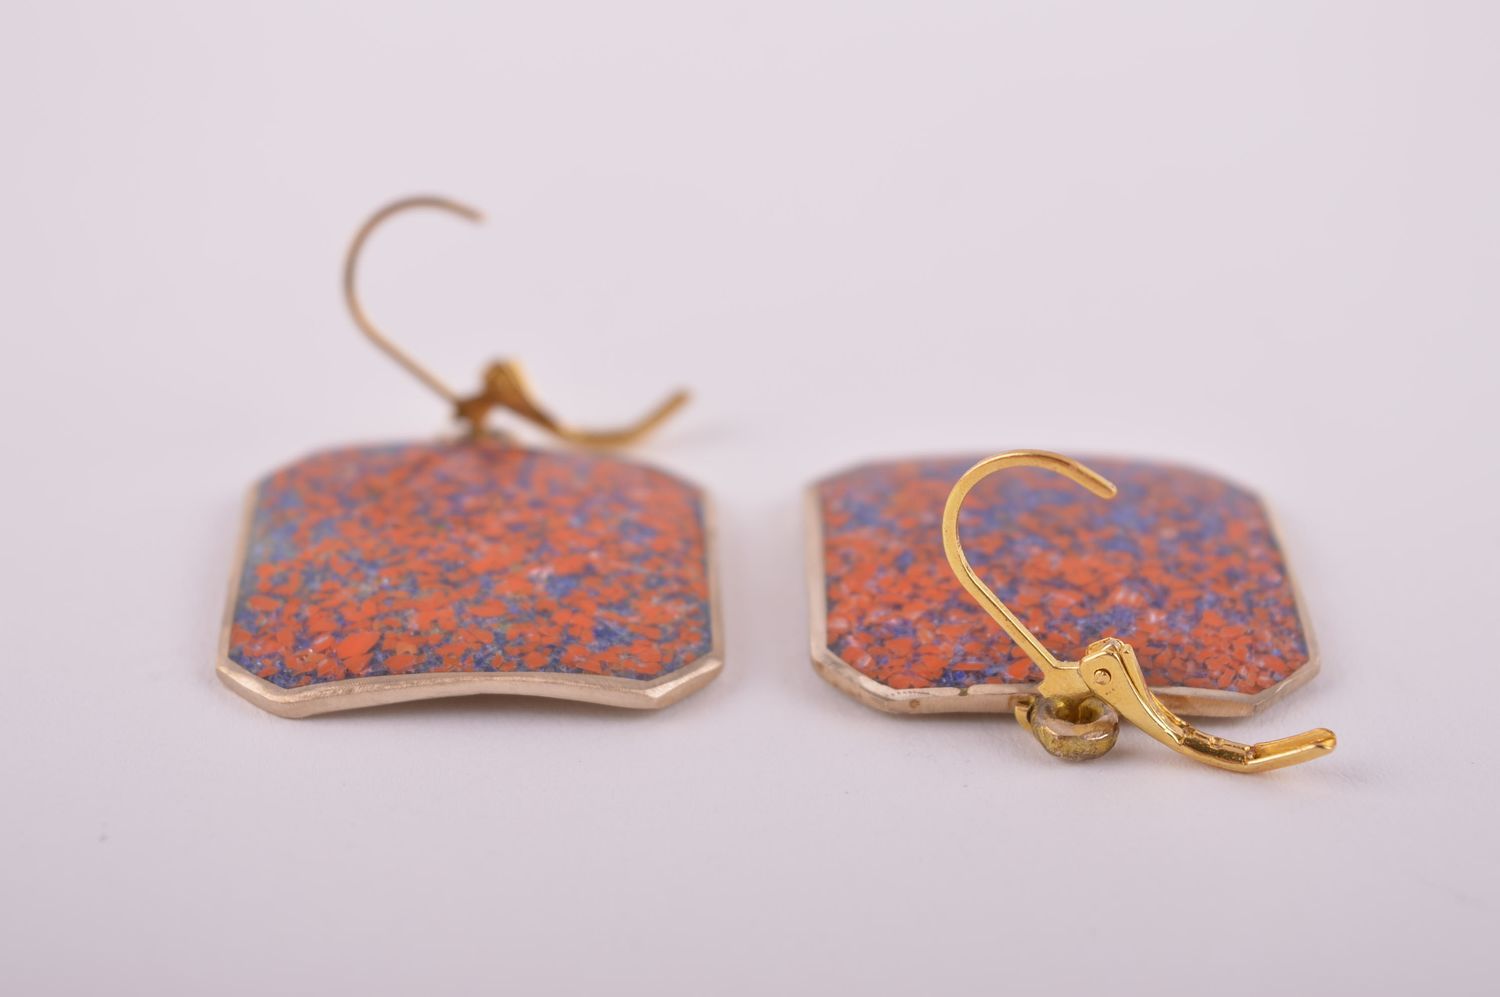 Украшение из латуни handmade серьги из натуральных камней модные серьги стильные фото 5